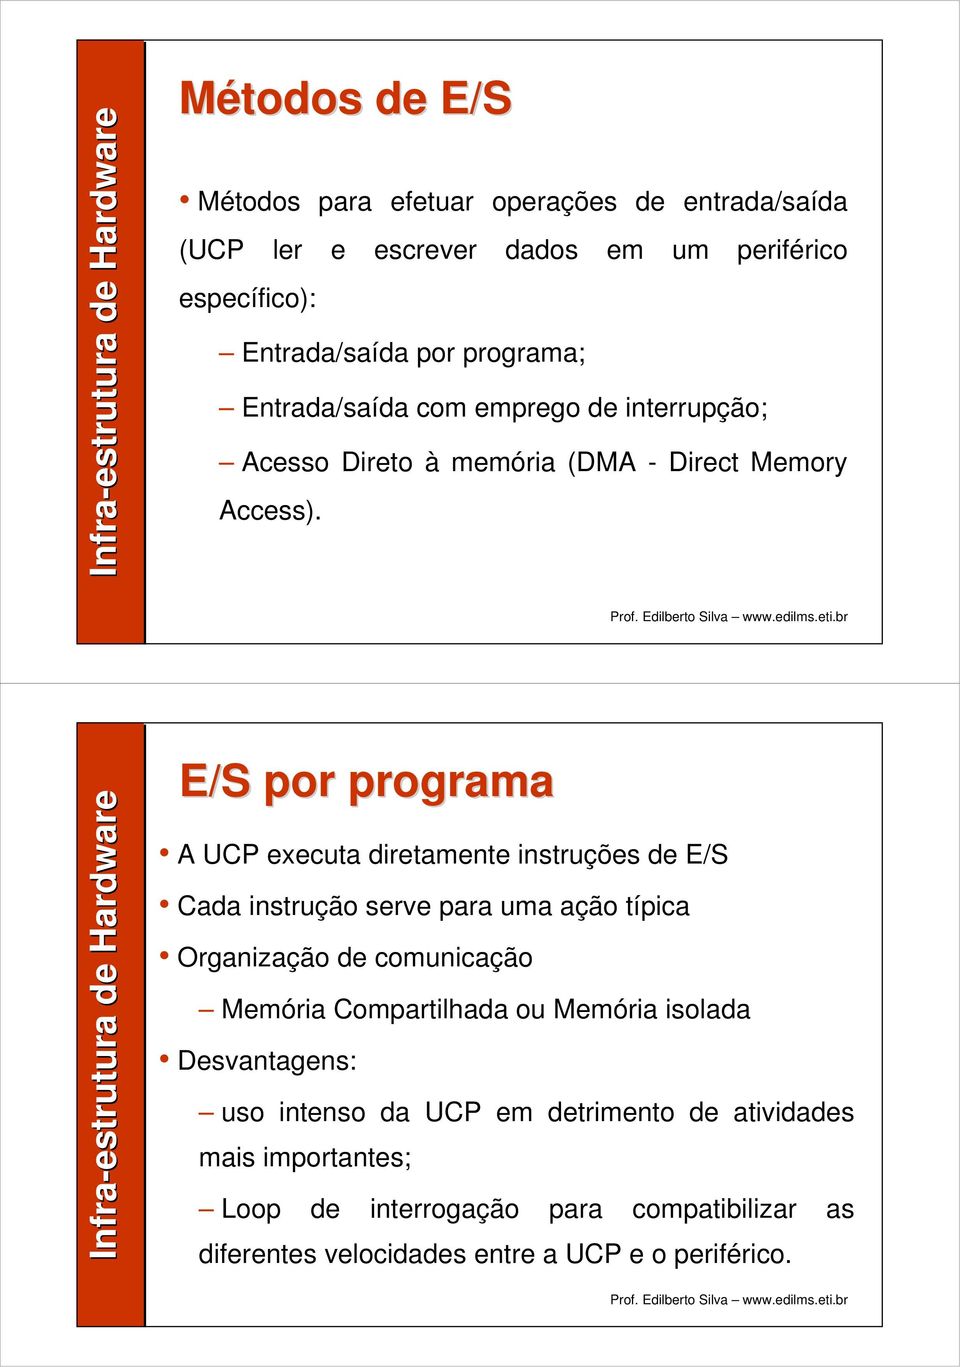 E/S por programa A UCP executa diretamente instruções de E/S Cada instrução serve para uma ação típica Organização de comunicação Memória